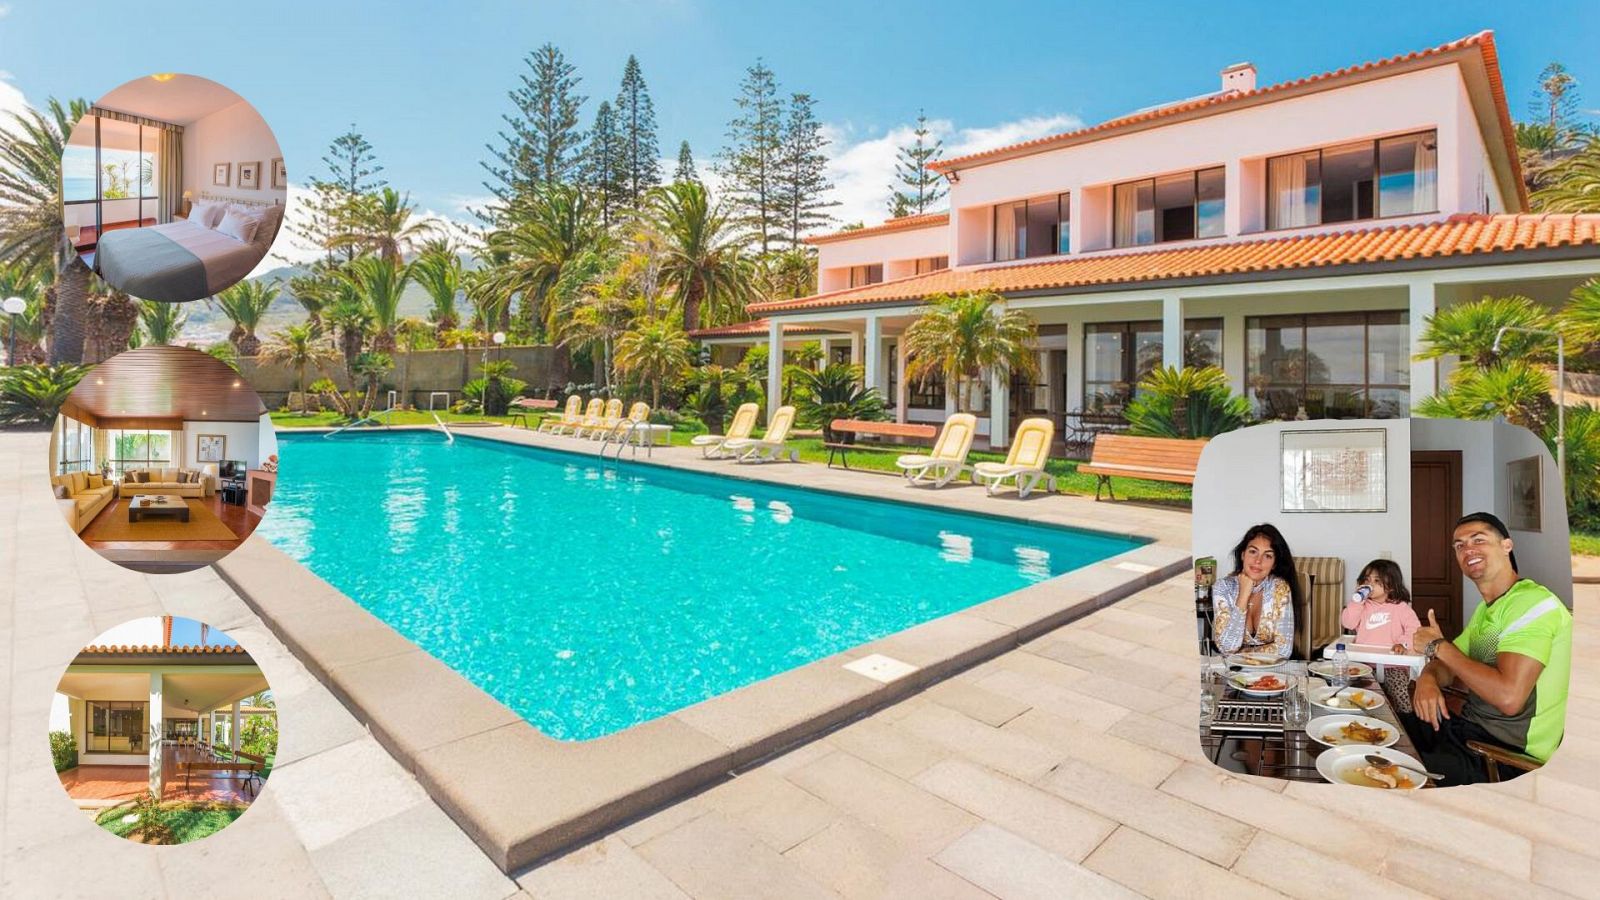 Moda, famosos y tendencias - Cristiano Ronaldo alquila una lujosa villa en Portugal para pasar la cuarentena